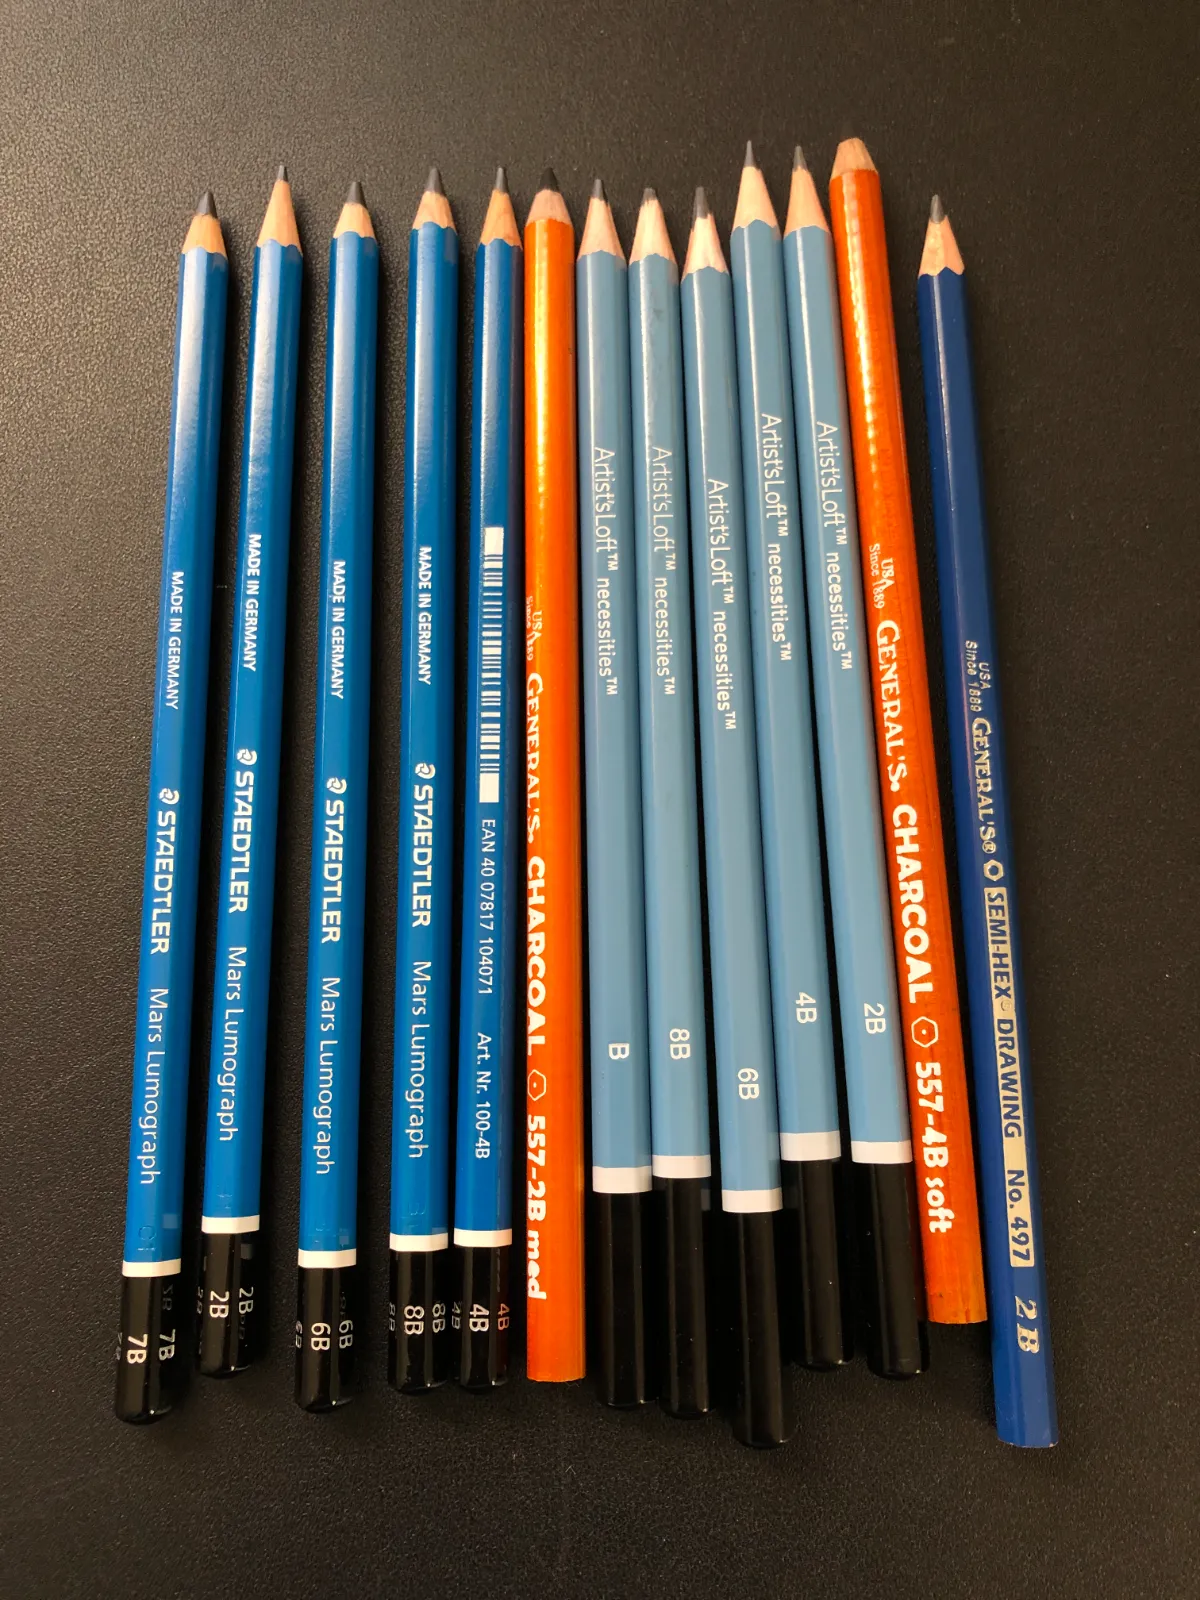 b pencils